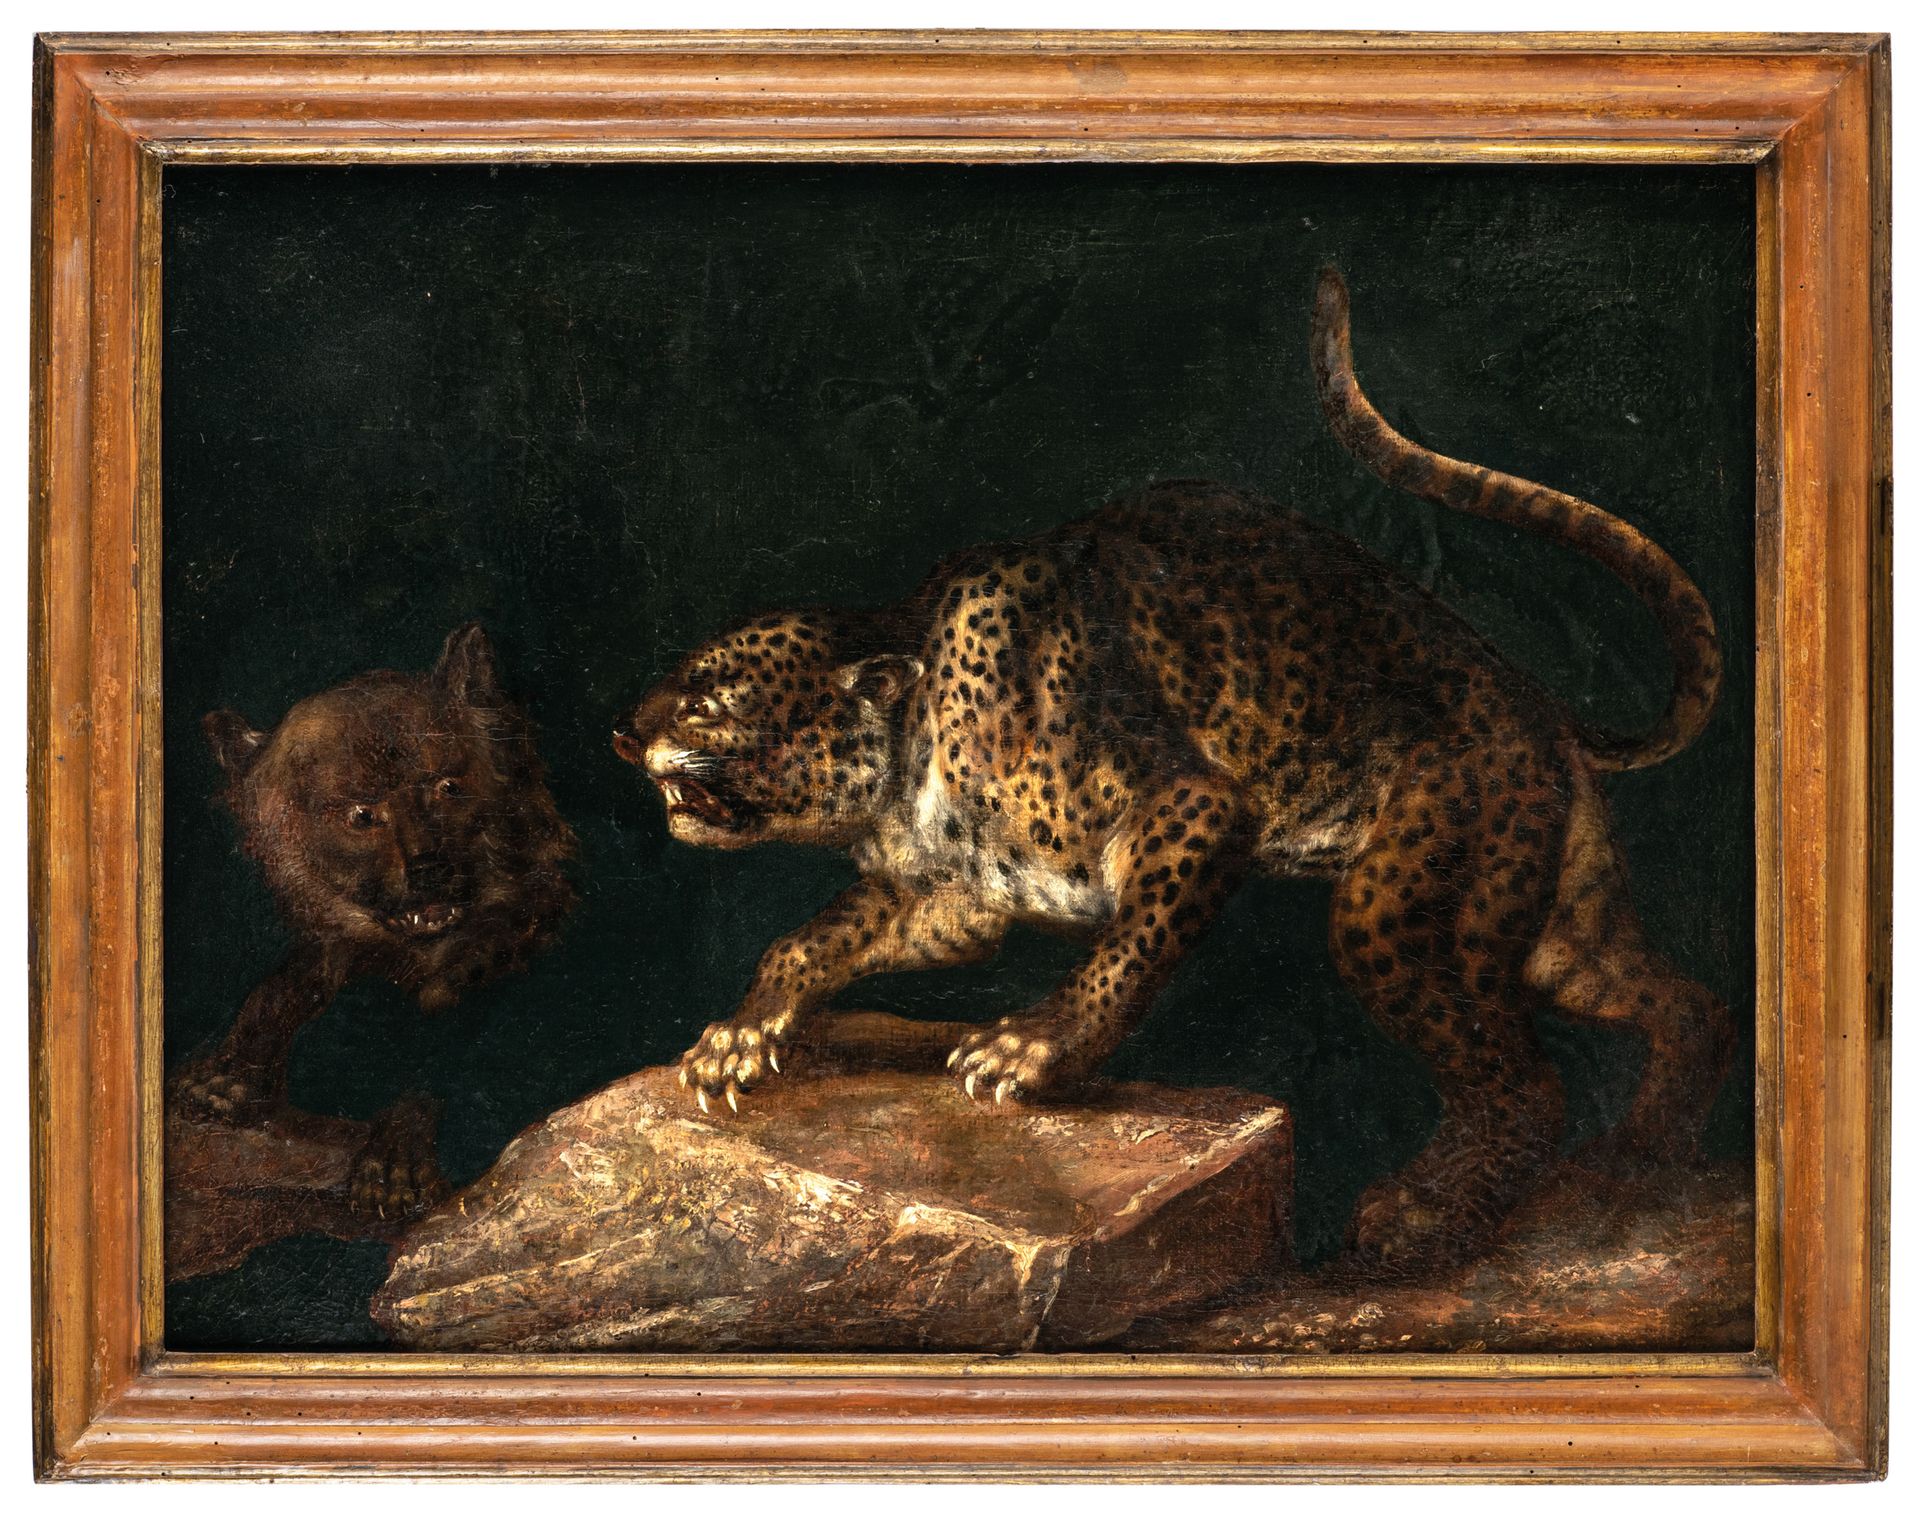 PITTORE DEL XVIII-XIX SECOLO Animals
Oil on canvas, cm 55X73